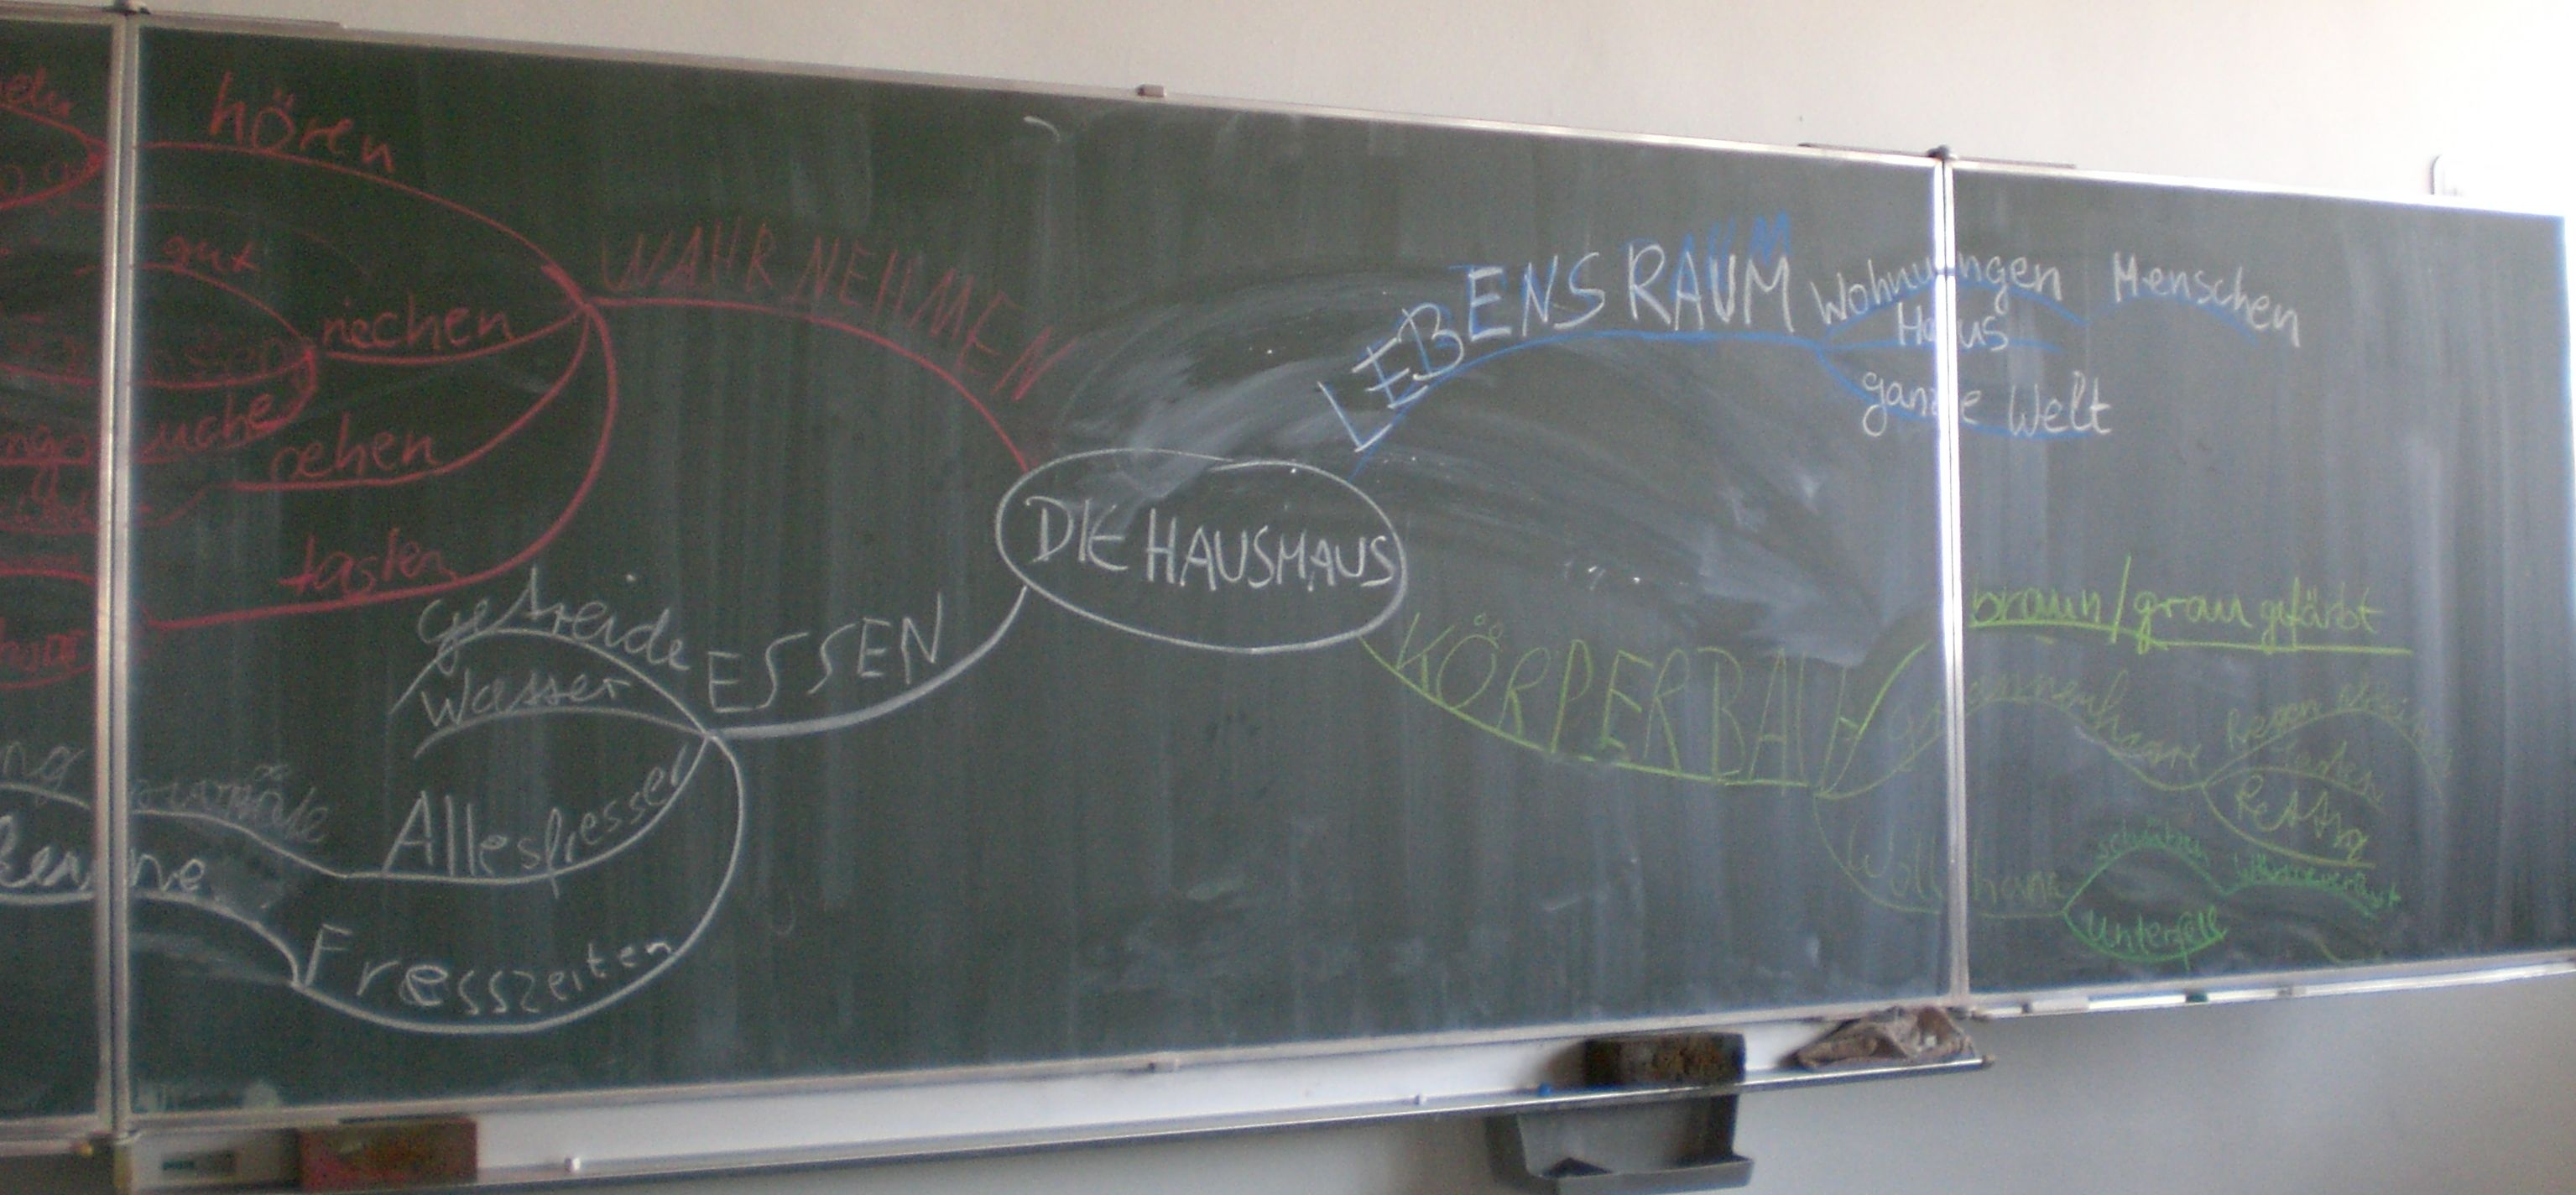 Klassenraum Tafel mit Mind Map "Hausmaus"; L.Ö.W.E.-Projekt